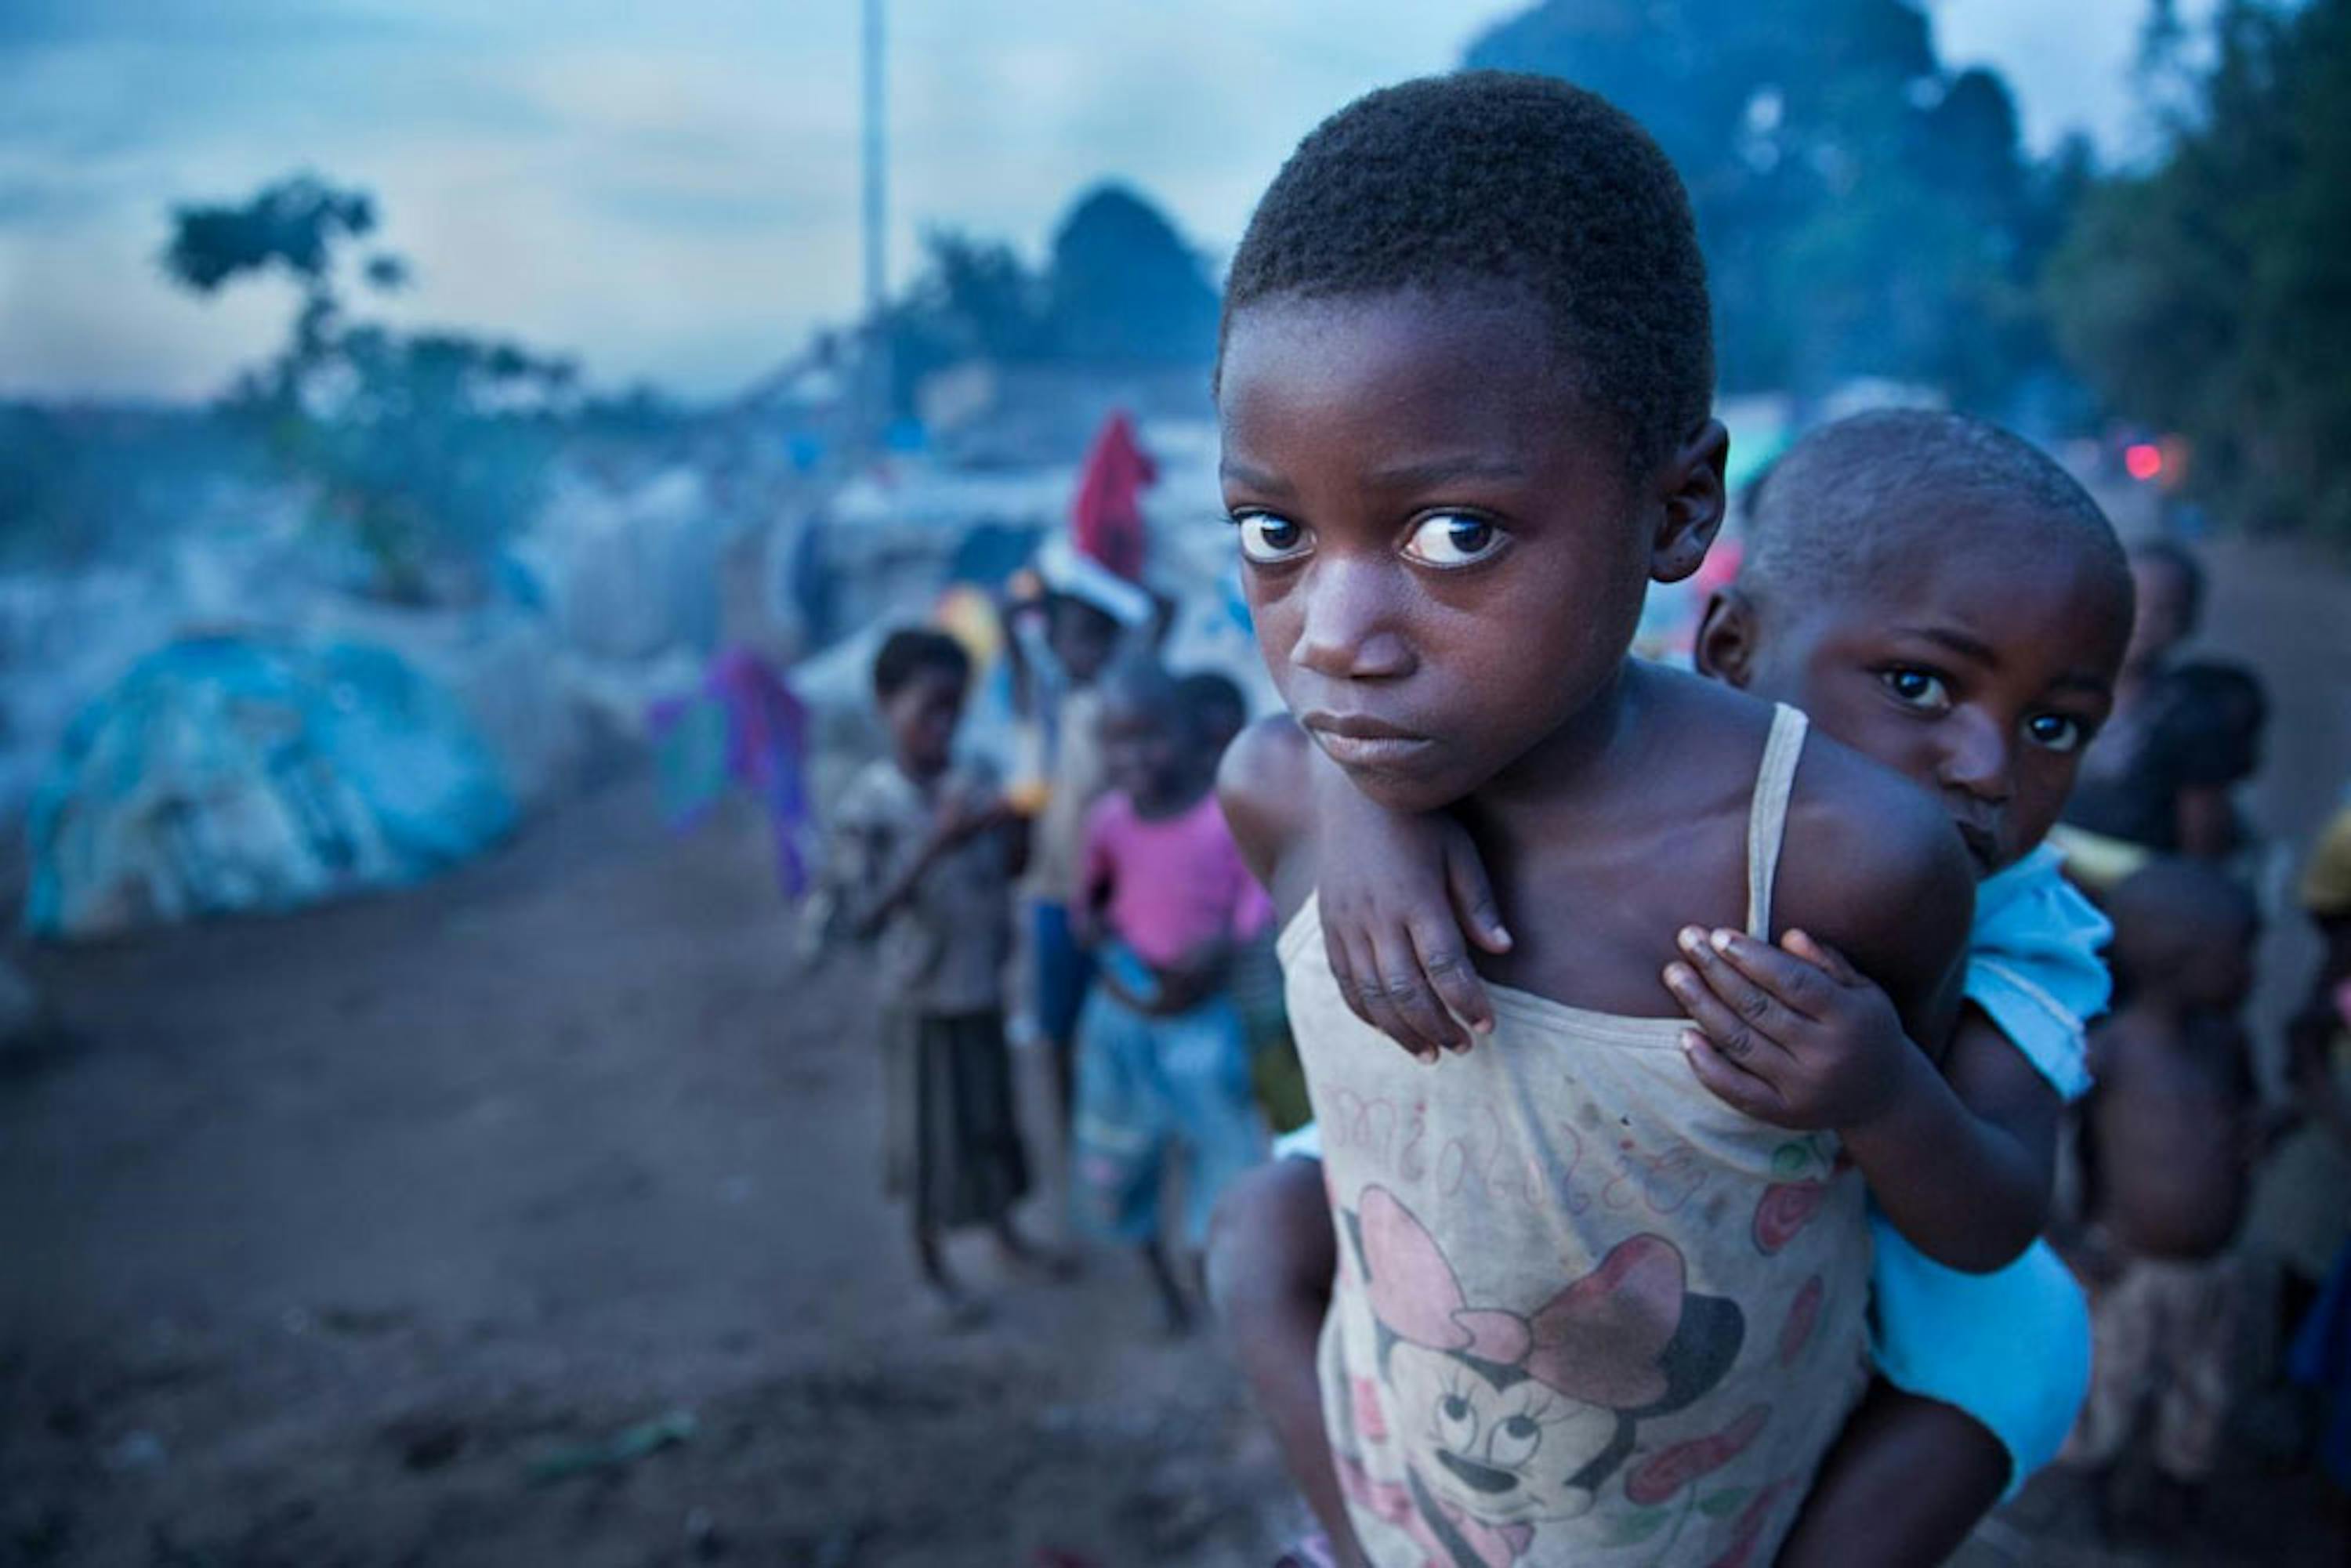 Accampamenti di fortuna come questo, nei dintorni della città di Kalemie sono i luoghi in cui sono costretti a vivere 1,3 milioni di sfollati nell'est della Repubblica Democratica del Congo - ©UNICEF/UN0156457/Vockel